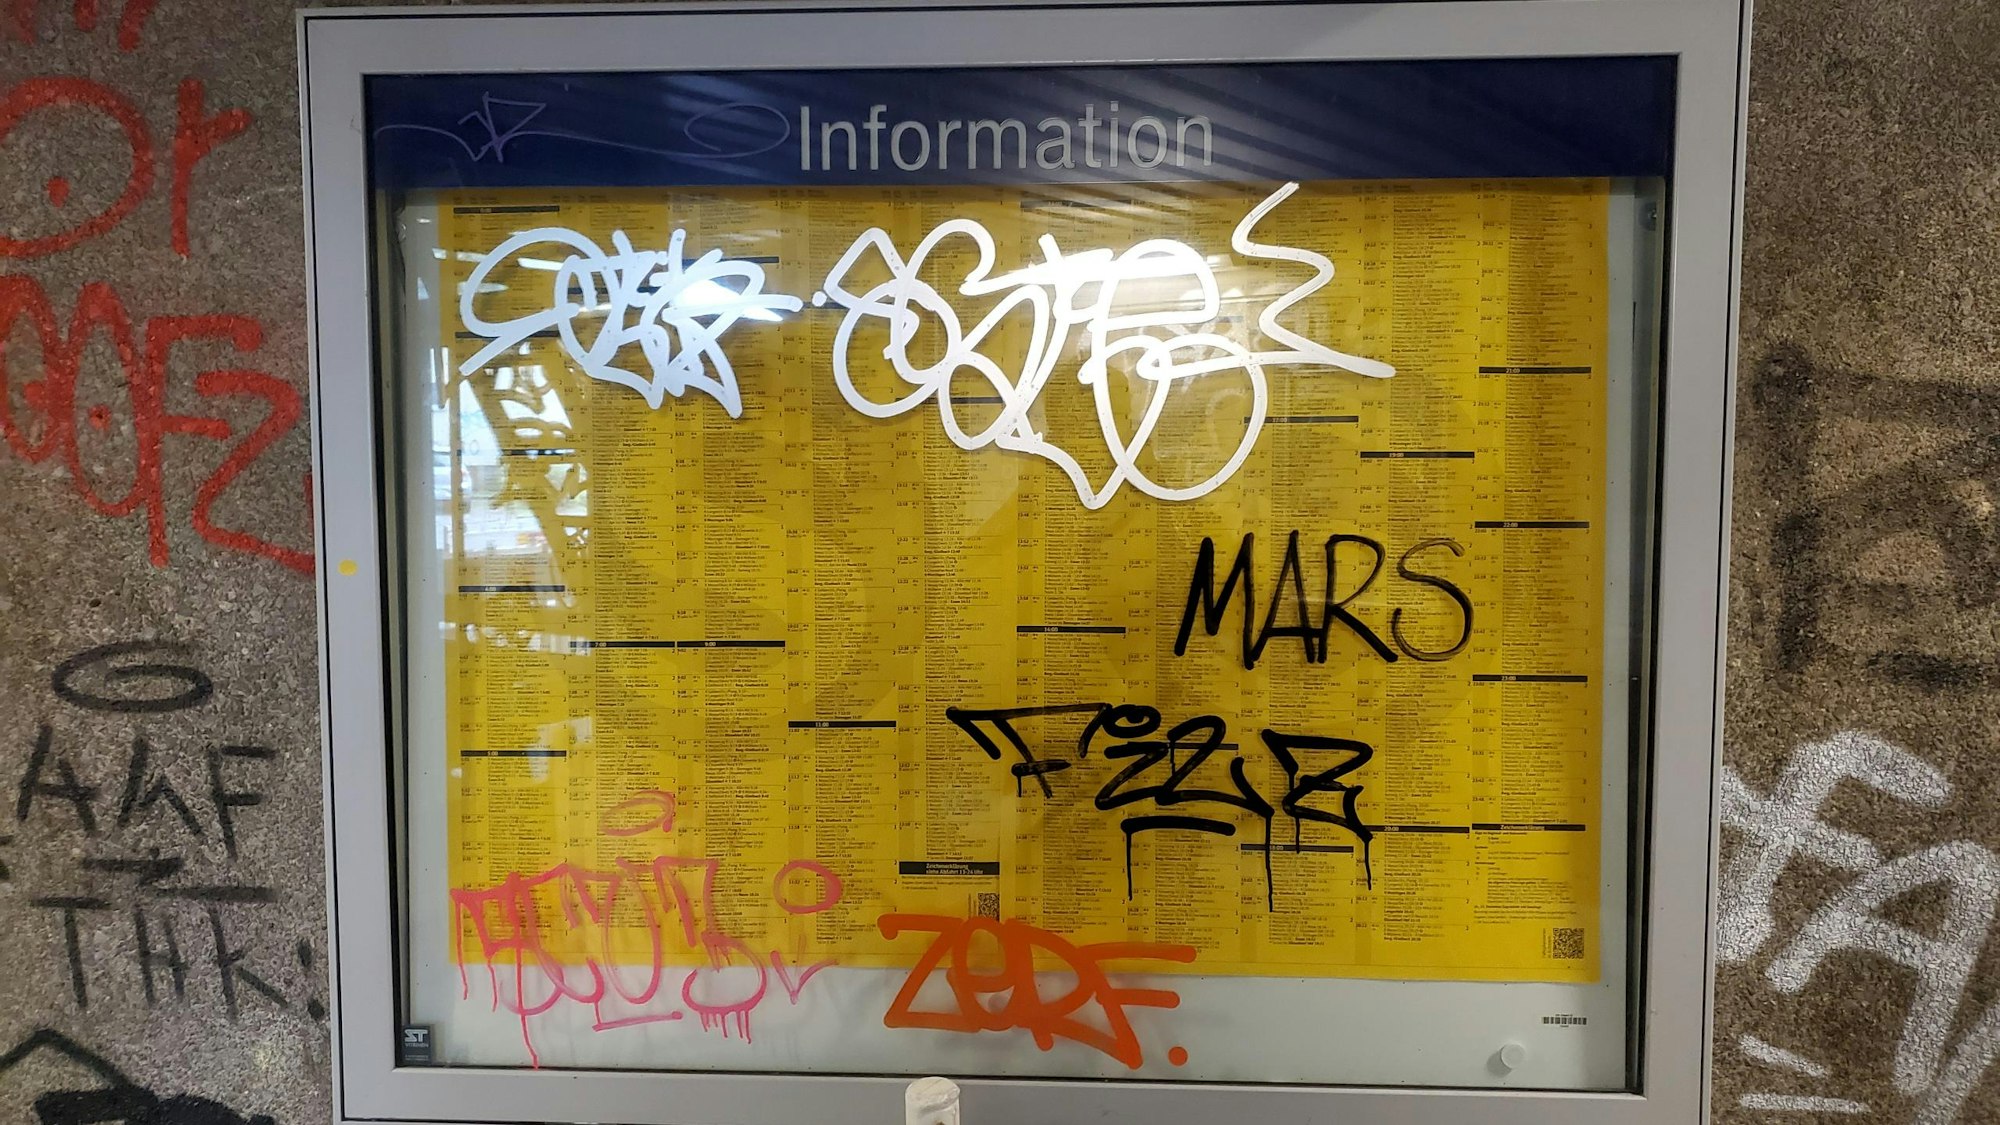 Der Fahrplan an der Haltestelle Köln-Nippes ist wegen des Graffitis nicht mehr lesbar.